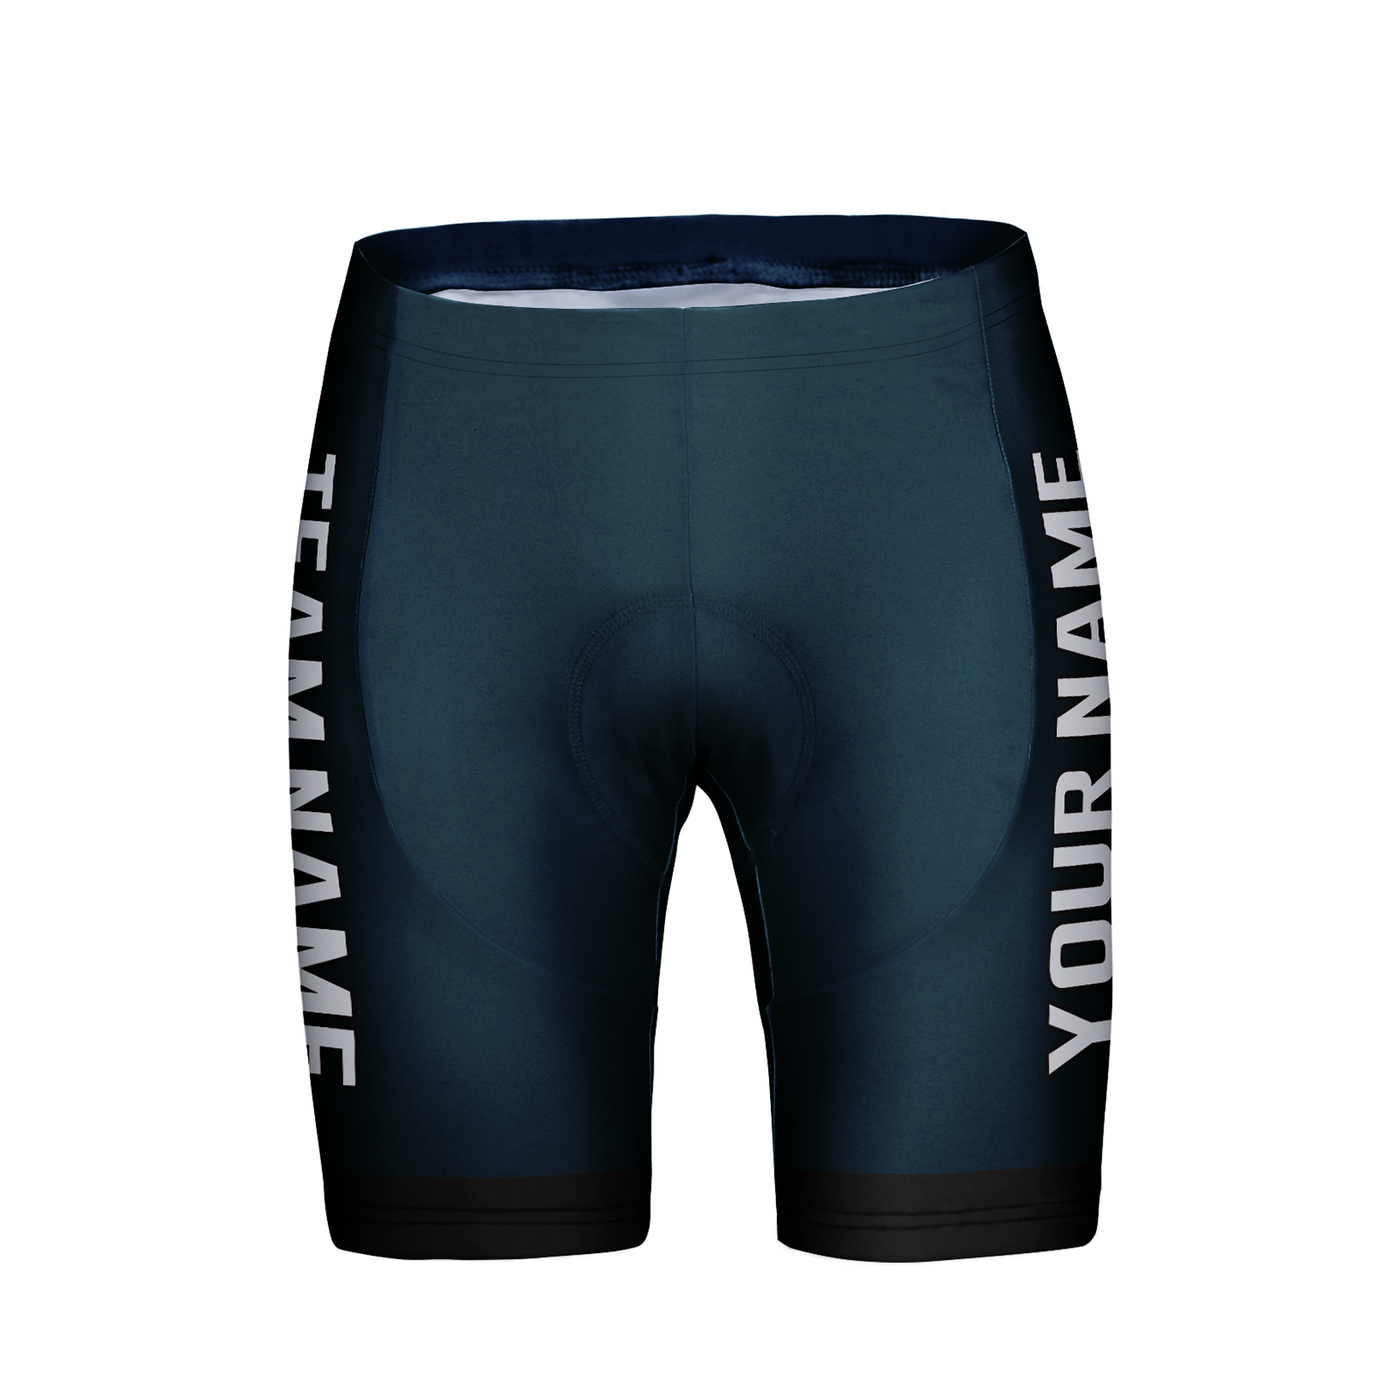 Customized Philadelphia Team Unisex Cycling Shorts